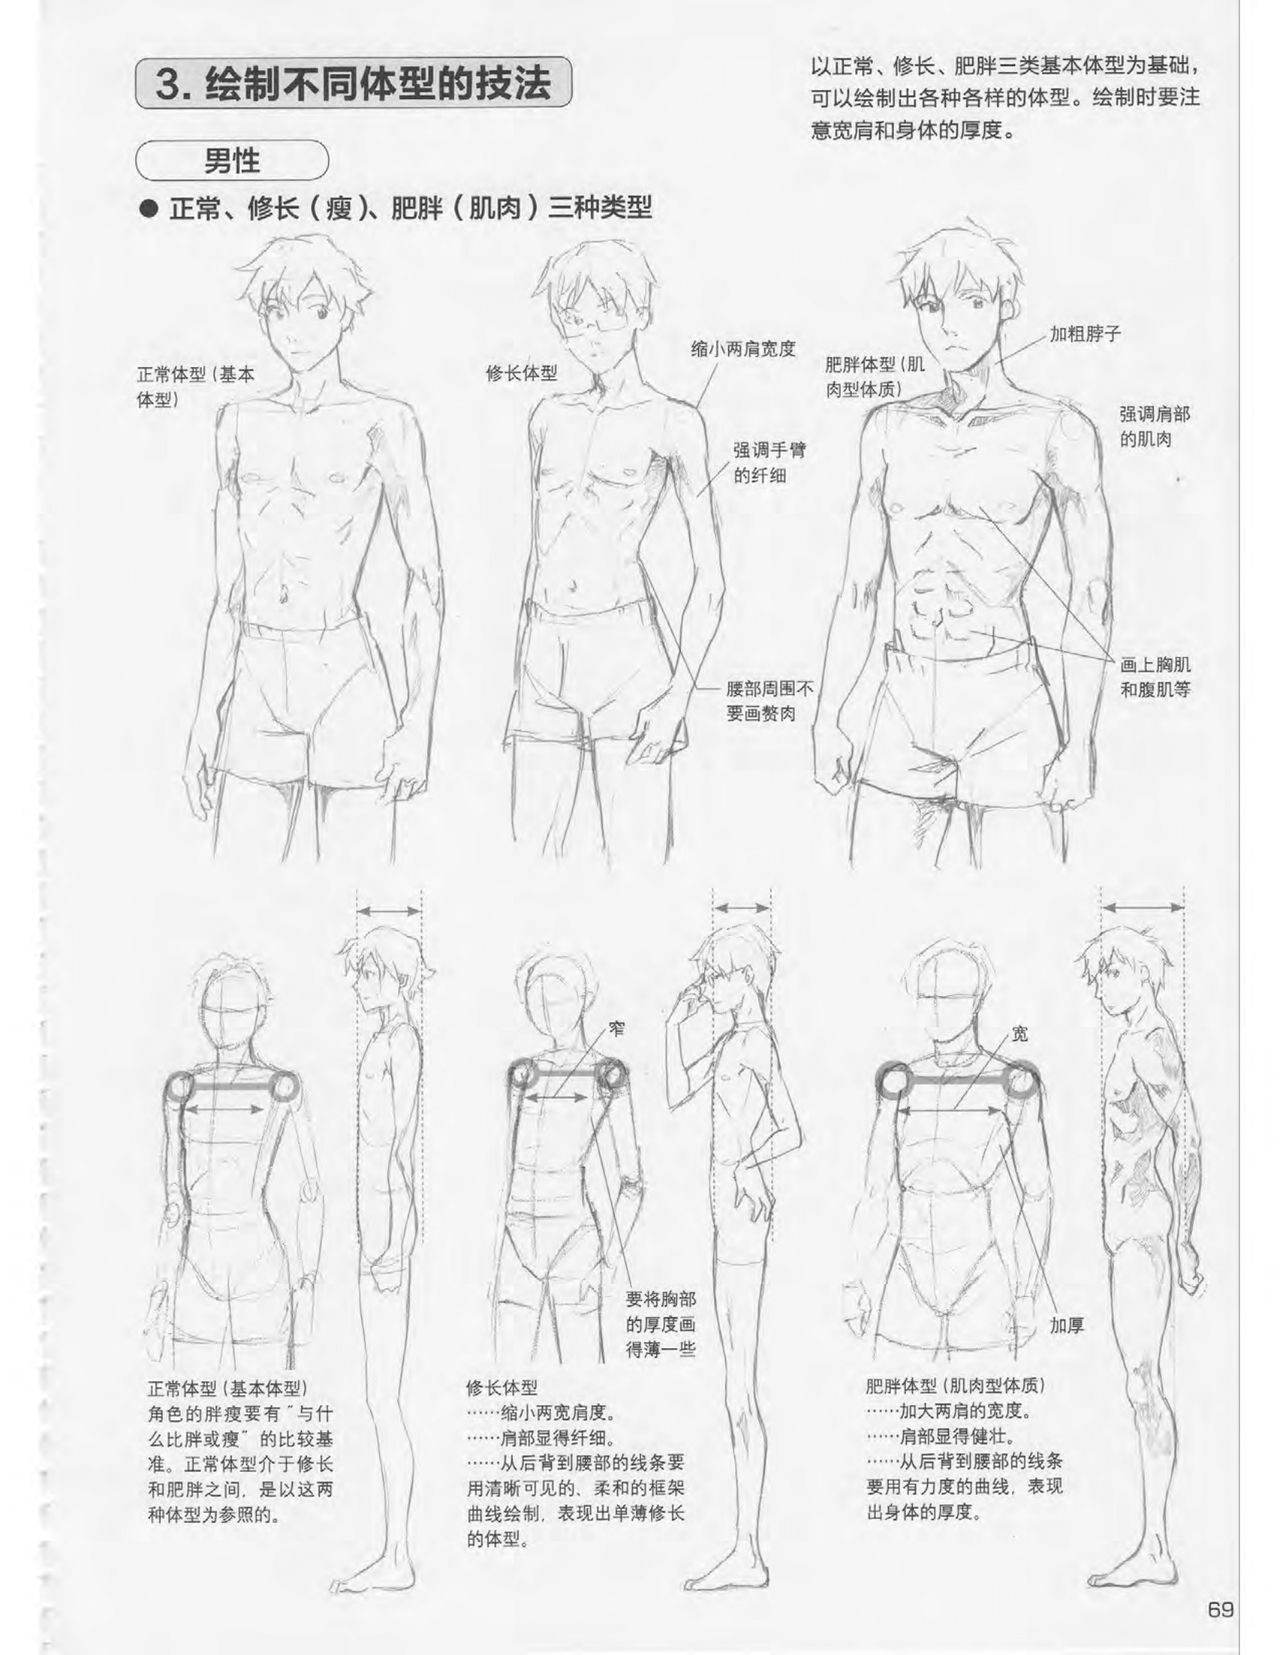 Japanese Manga Master Lecture 3: Lin Akira and Kakumaru Maru Talk About Glamorous Character Modeling 69